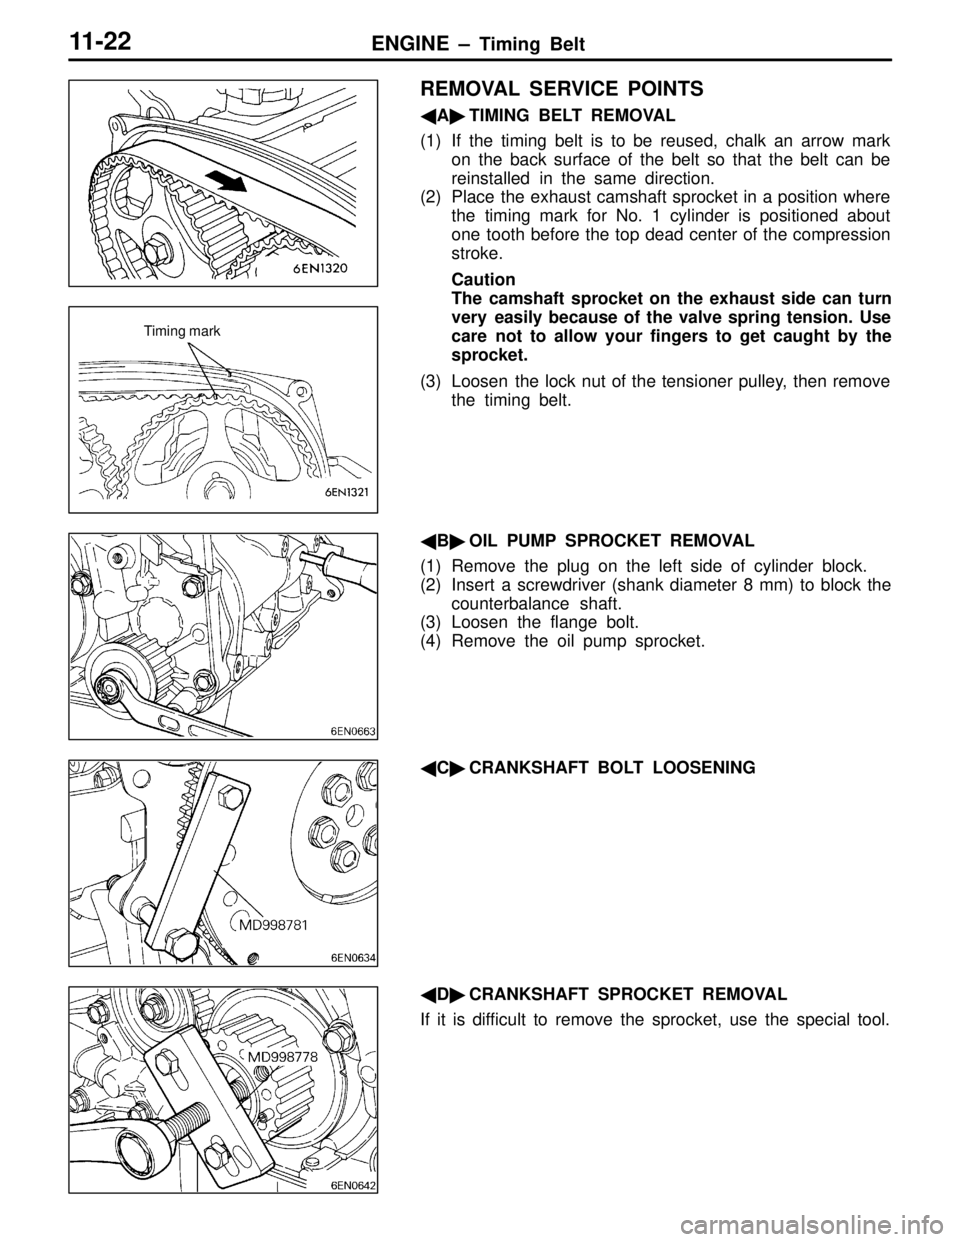 MITSUBISHI LANCER EVOLUTION IV 1998 Owners Manual ENGINE – Timing Belt11-22
REMOVAL SERVICE POINTS
ATIMING BELT REMOVAL
(1) If the timing belt is to be reused, chalk an arrow mark
on the back surface of the belt so that the belt can be
reinstalle